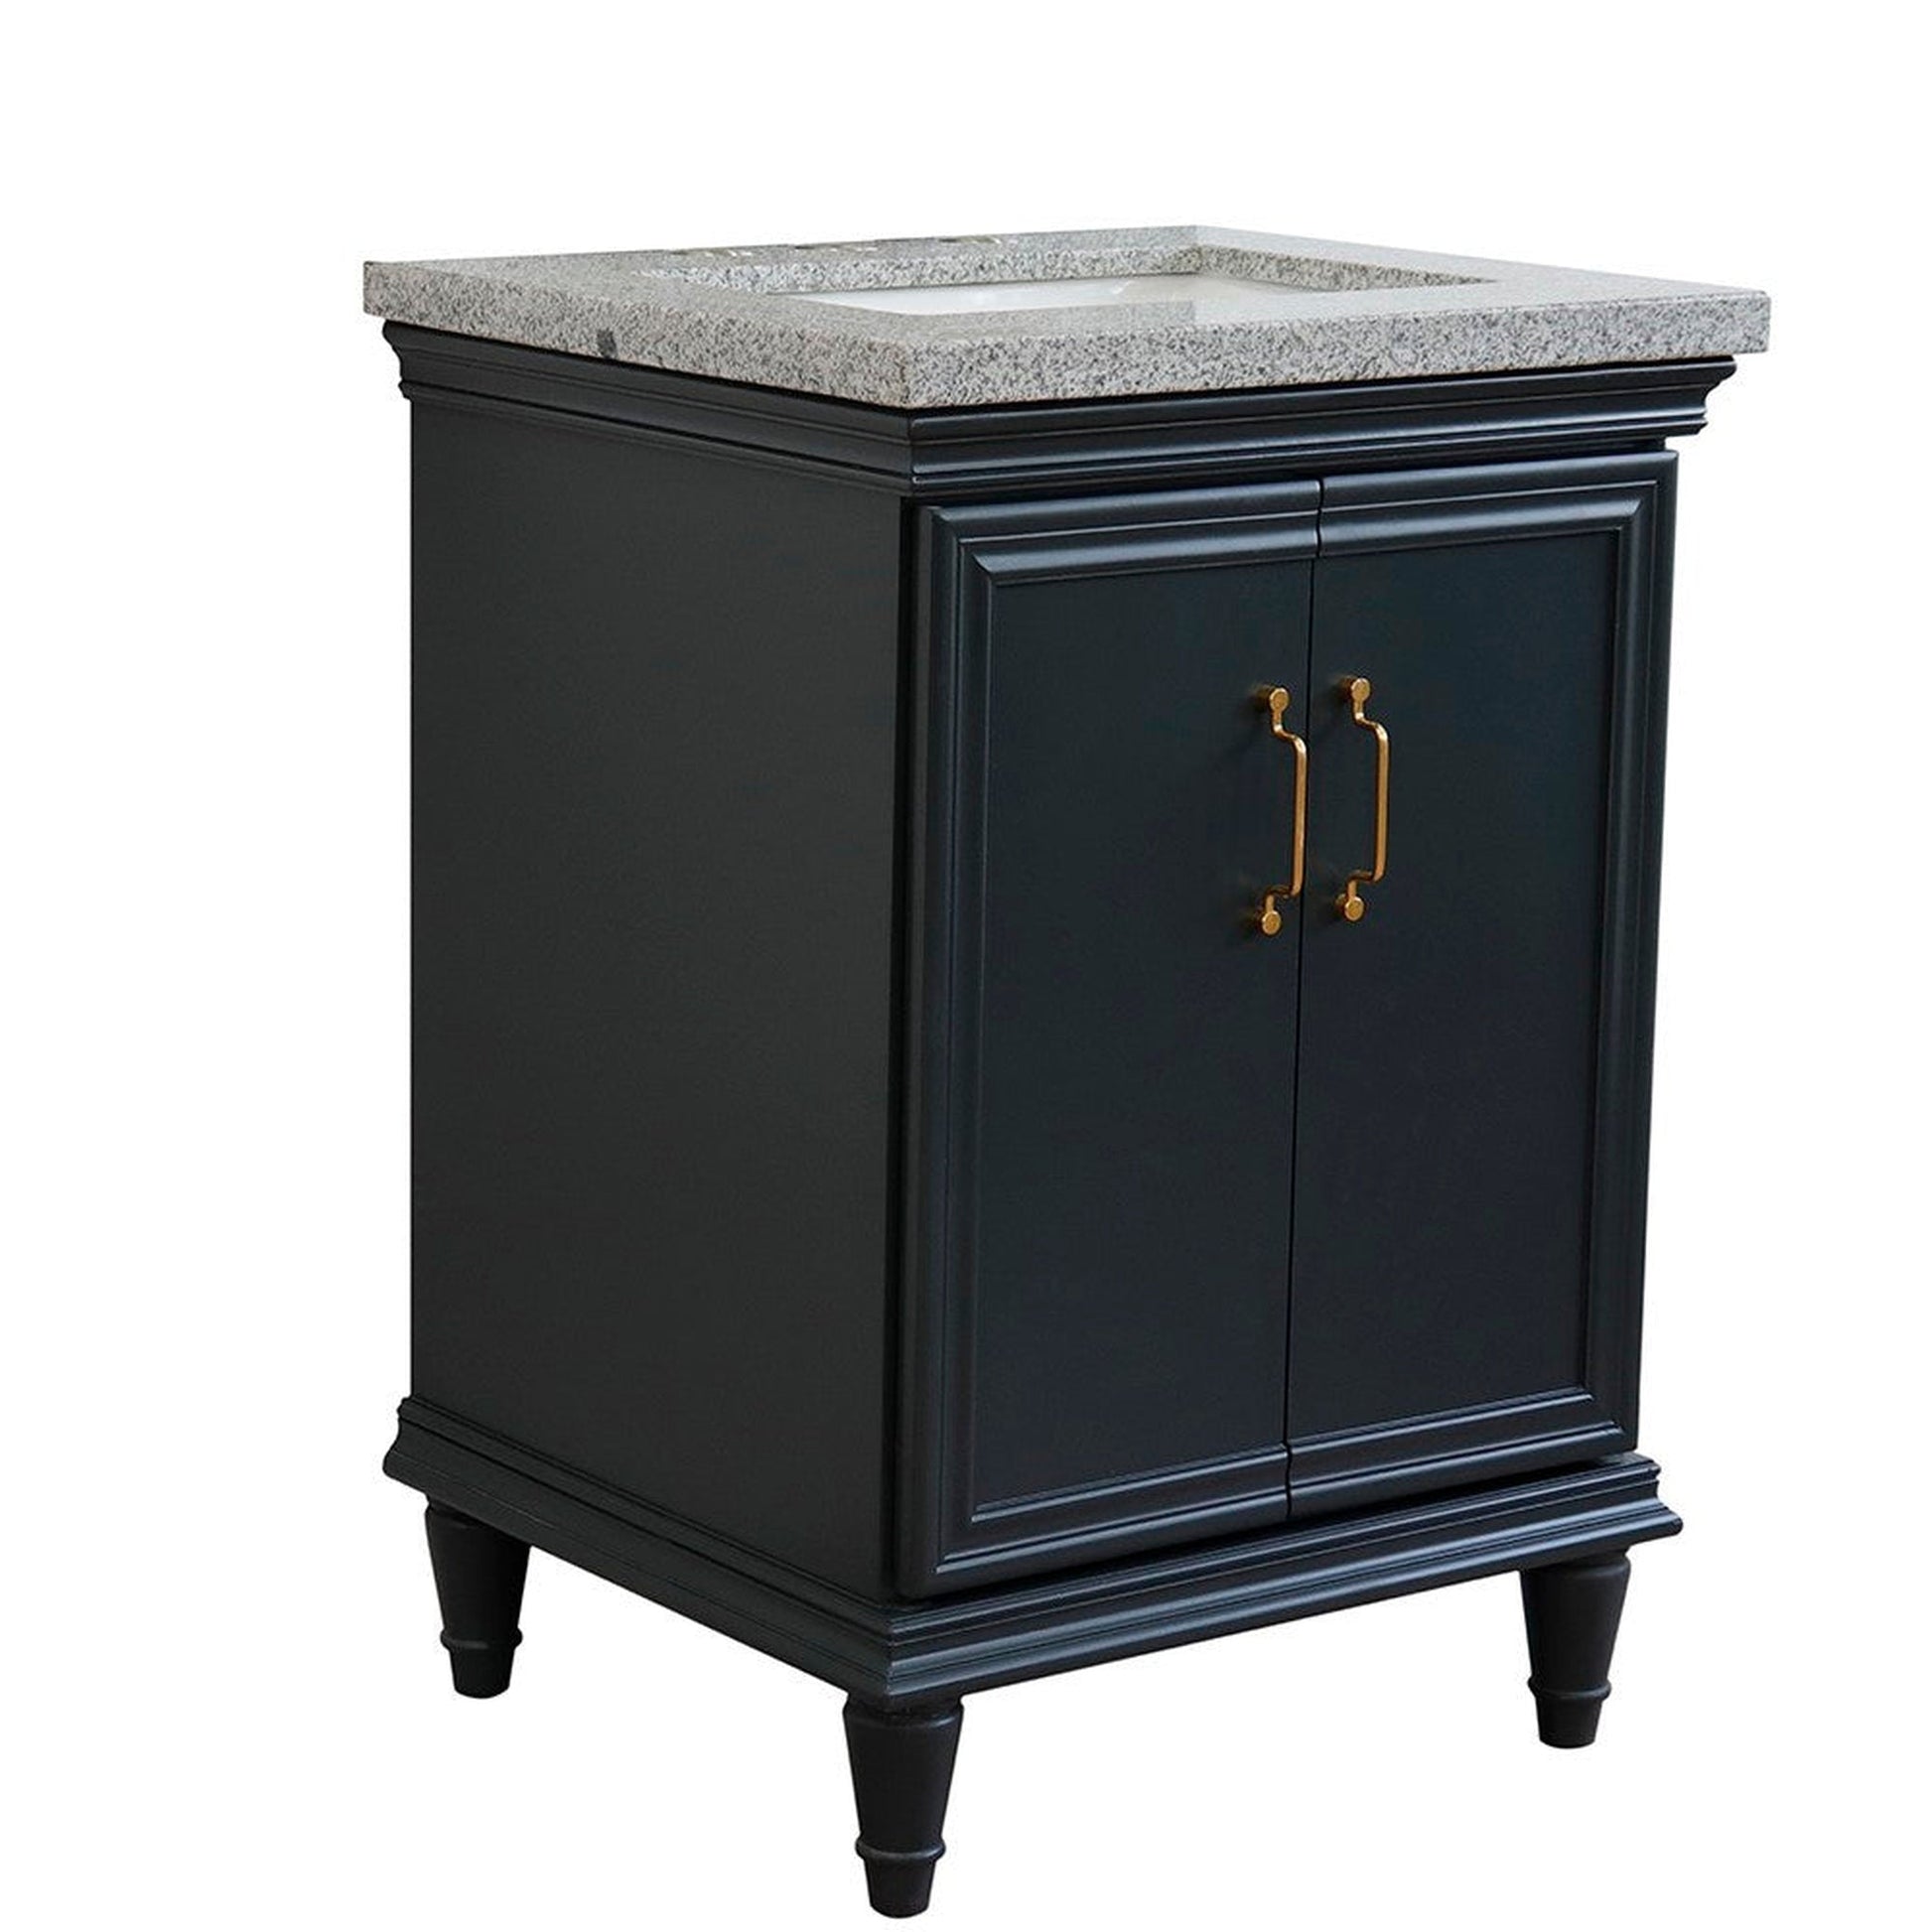 Bellaterra Home Forli 25" 2-Door 1-Drawer Dark Gray Freestanding Vanity Set With Ceramic Undermount Rectangular Sink And Gray Granite Top